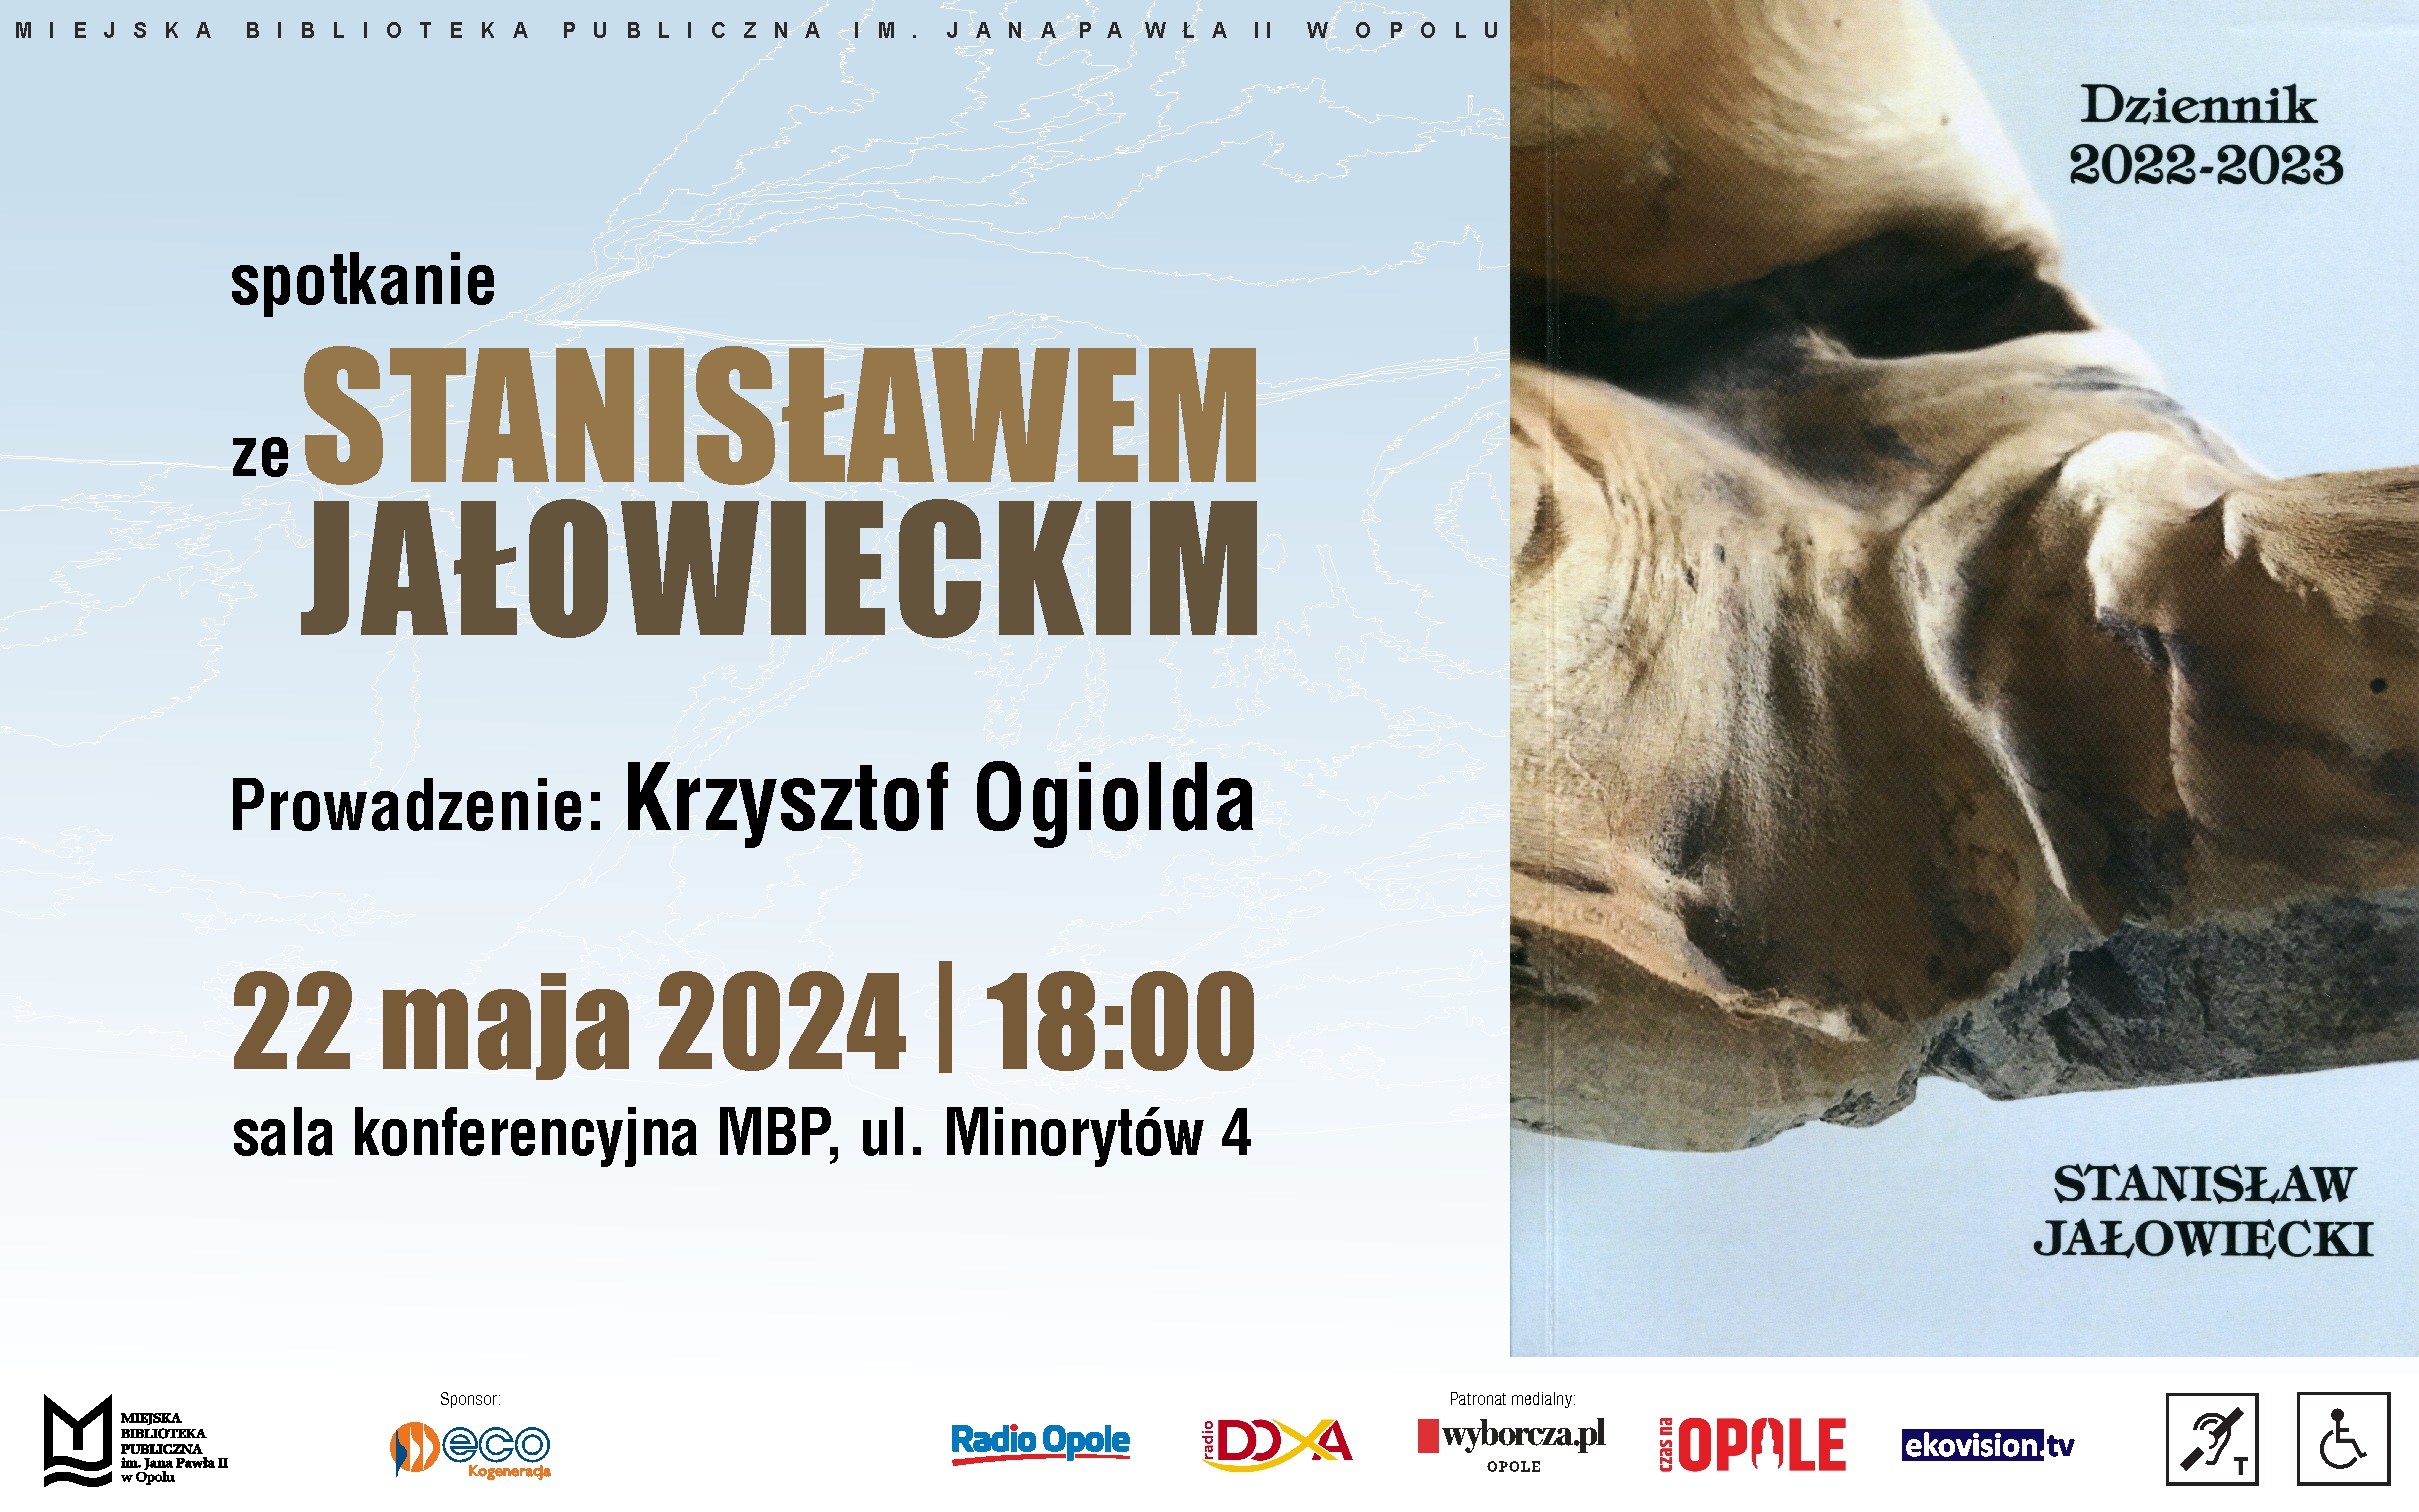 Dziennik 2022-2023 – spotkanie ze Stanisławem Jałowieckim